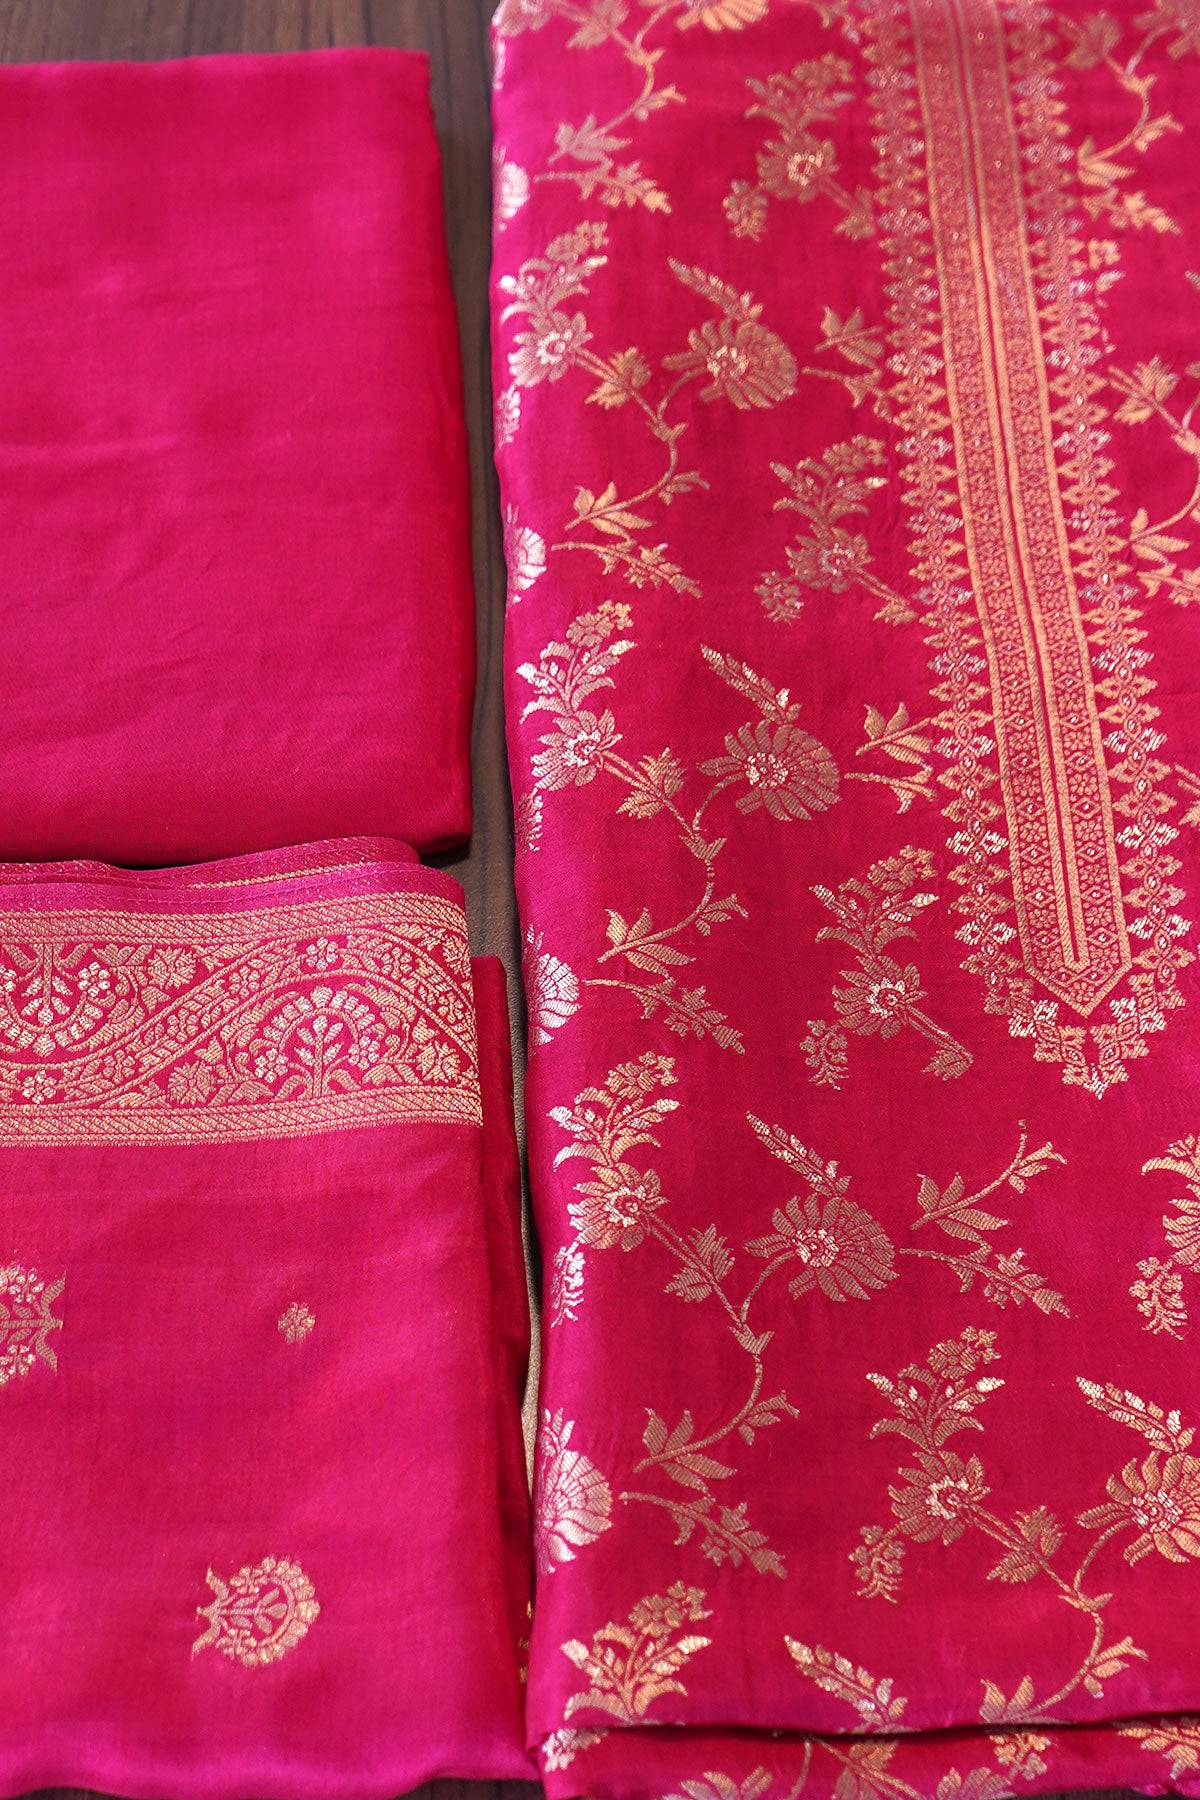 Gajari  Blended Silk Zari Woven Suit Set